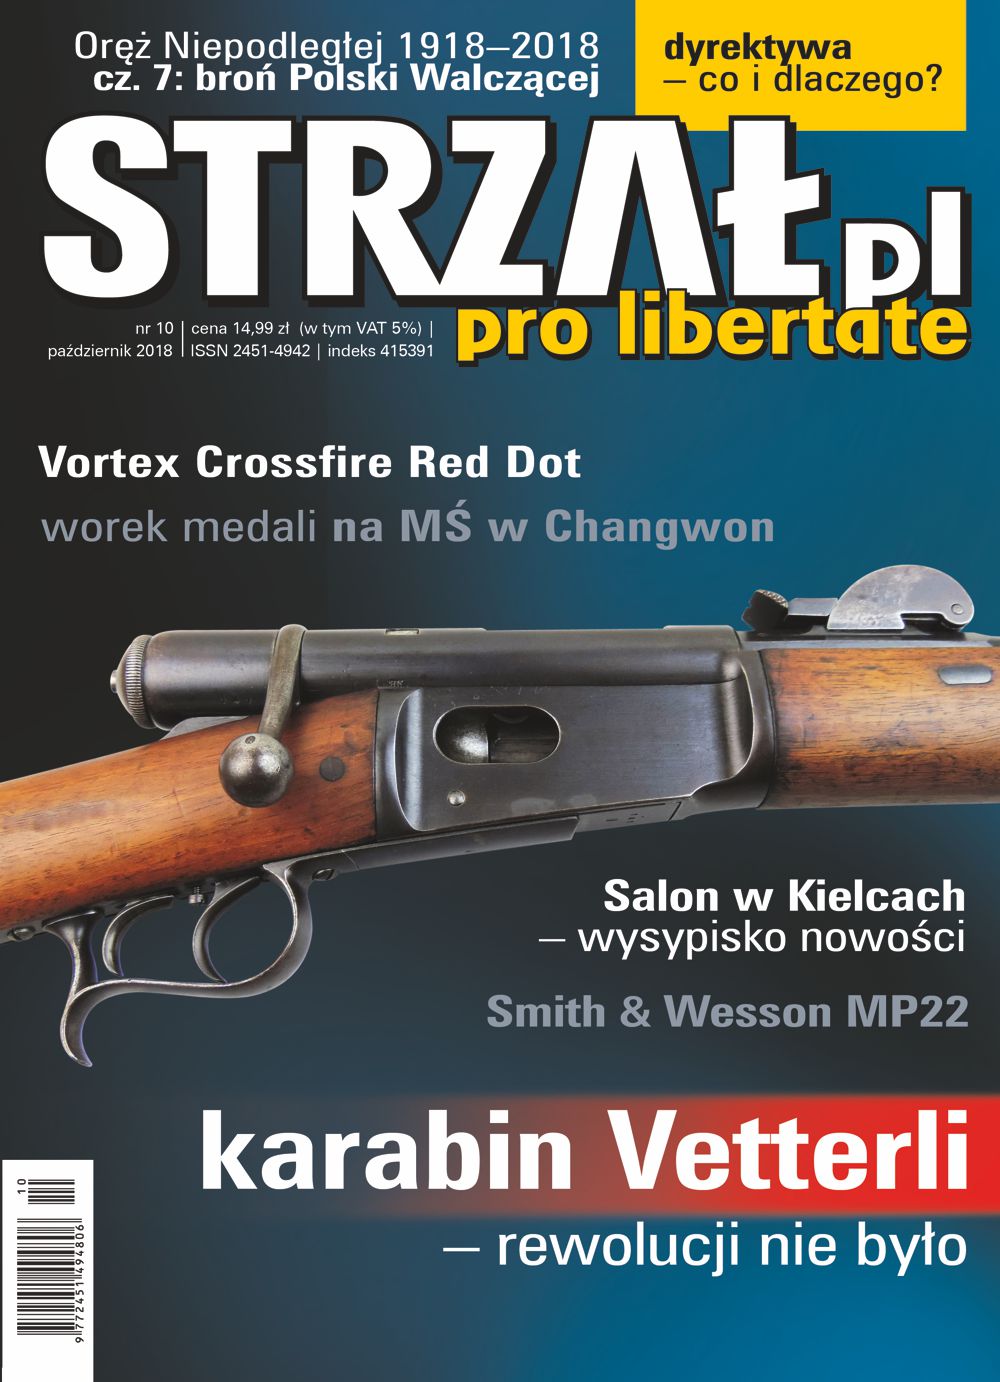 STRZAL.pl pazdziernik 2018